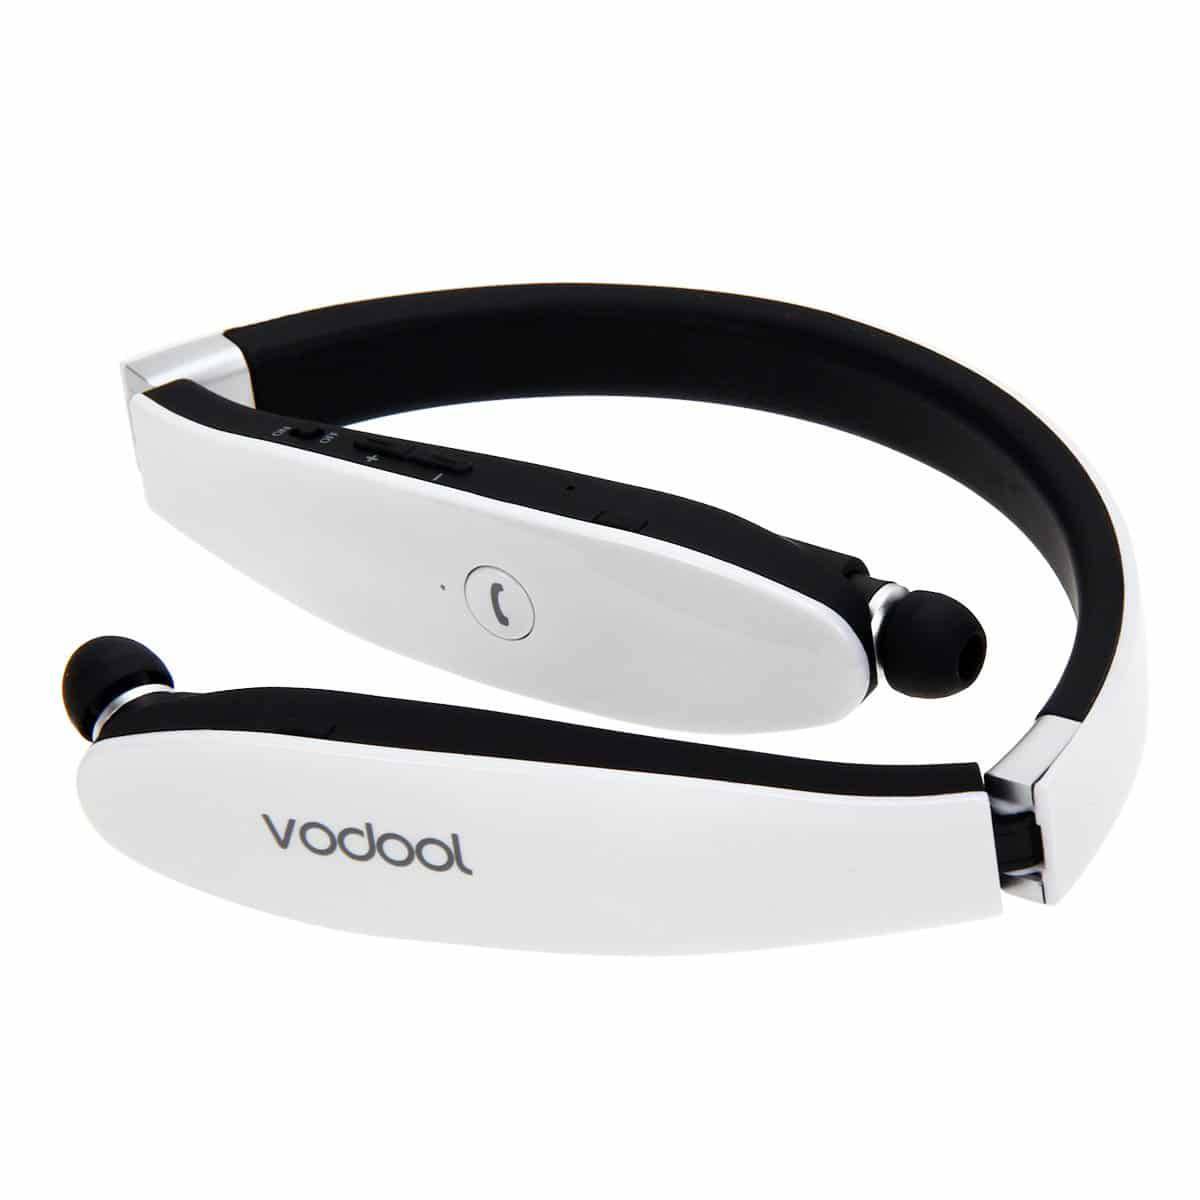 Voodol Bluetooth Wireless Earphone White